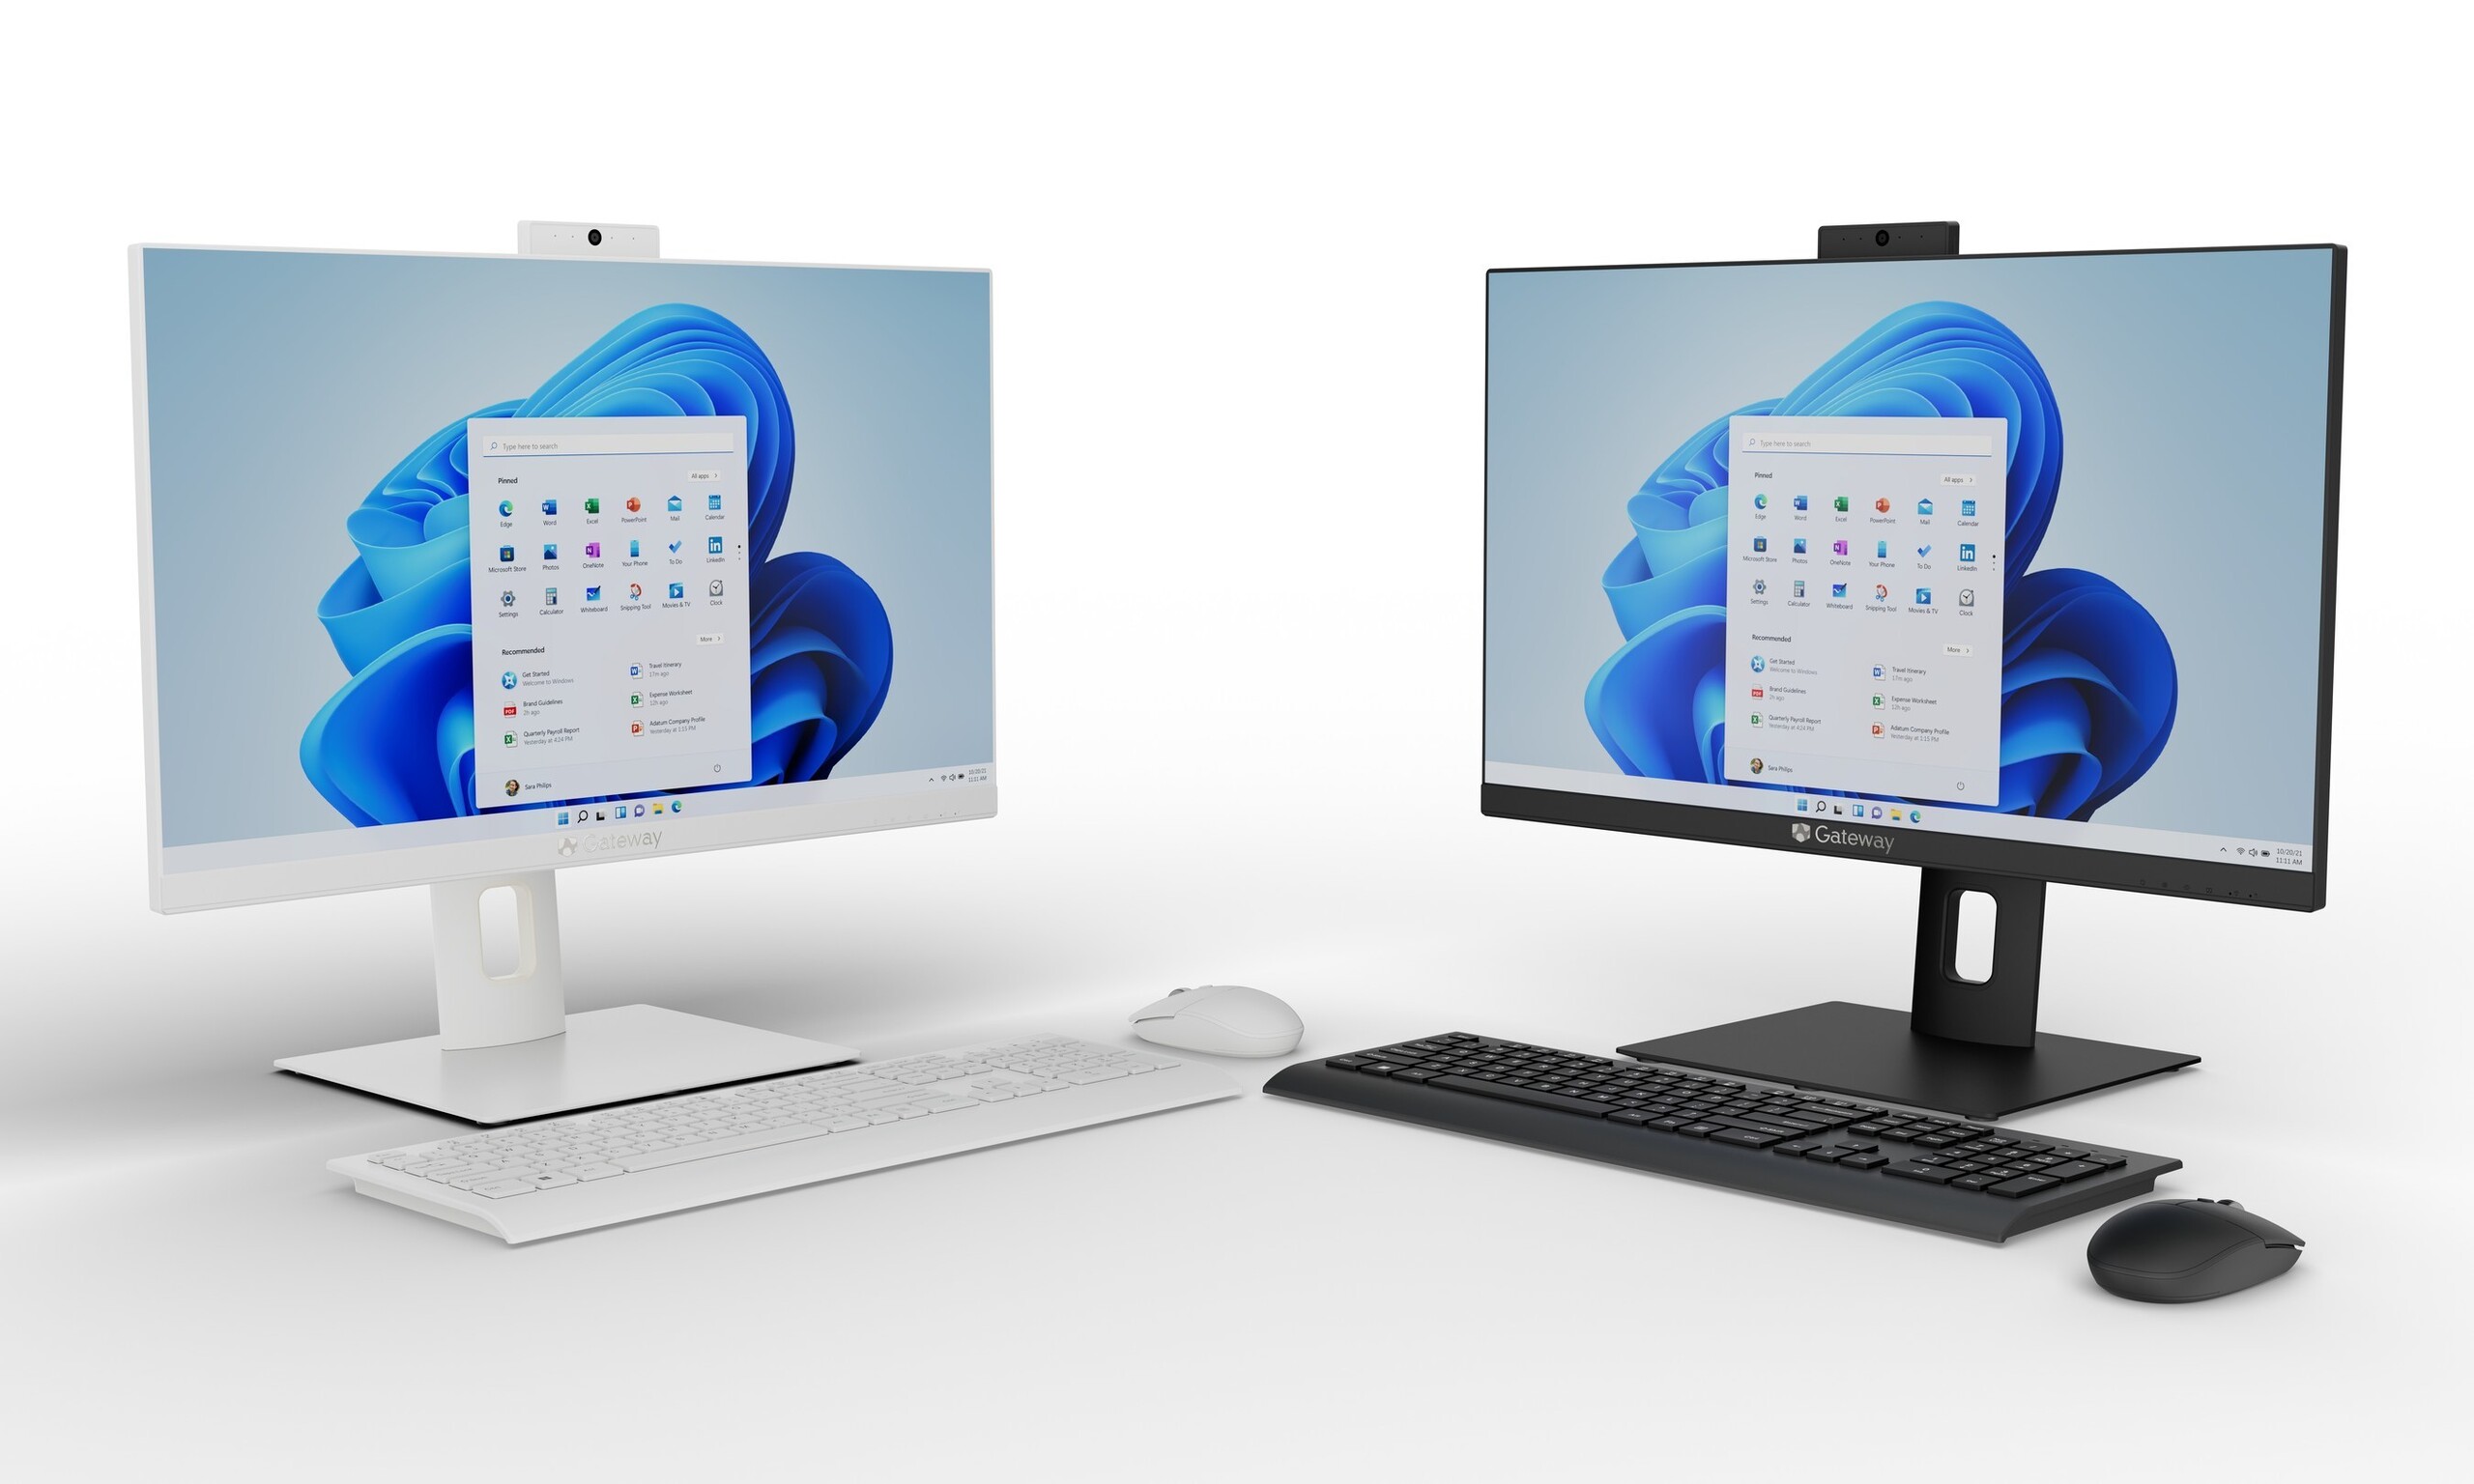 knal smeren Vorige Gateway brengt een nieuwe, betaalbare all-in-one PC uit via Walmart -  Notebookcheck.nl Nieuws